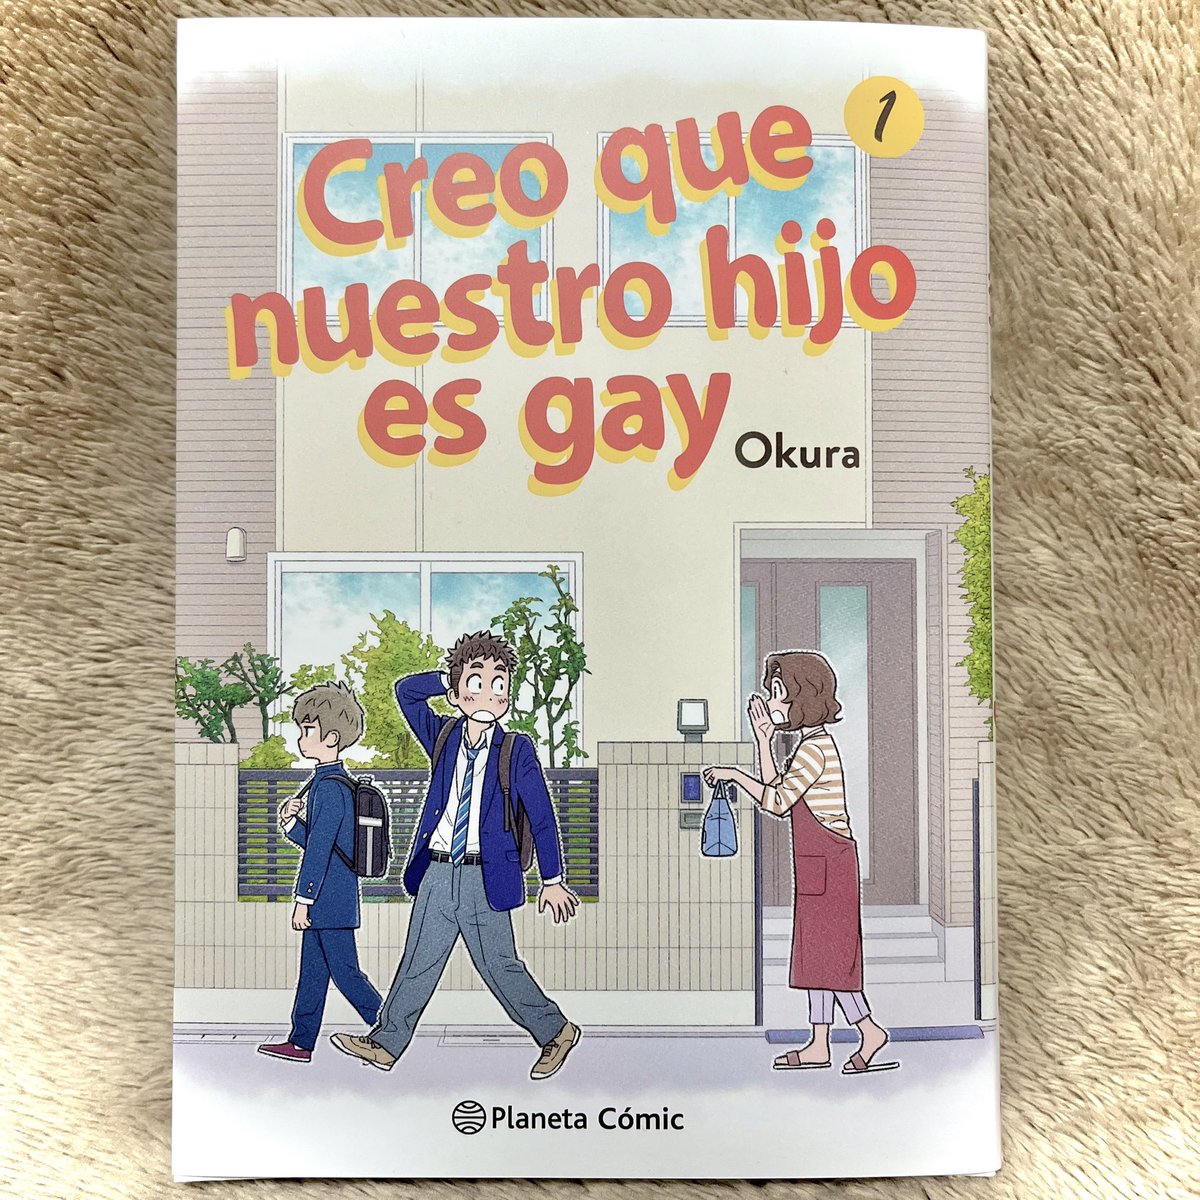 『うちの息子はたぶんゲイ』スペイン語訳版コミックス1巻が届きました!
翻訳版は描き文字がどう訳されているのか見るのが楽しいですね!日本語で「ちゅー」は「BESOO」と訳されていました。「BESO」が「接吻」の意味らしいので、「接吻〜〜」って感じでしょうかね。笑

#うちの息子はたぶんゲイ 